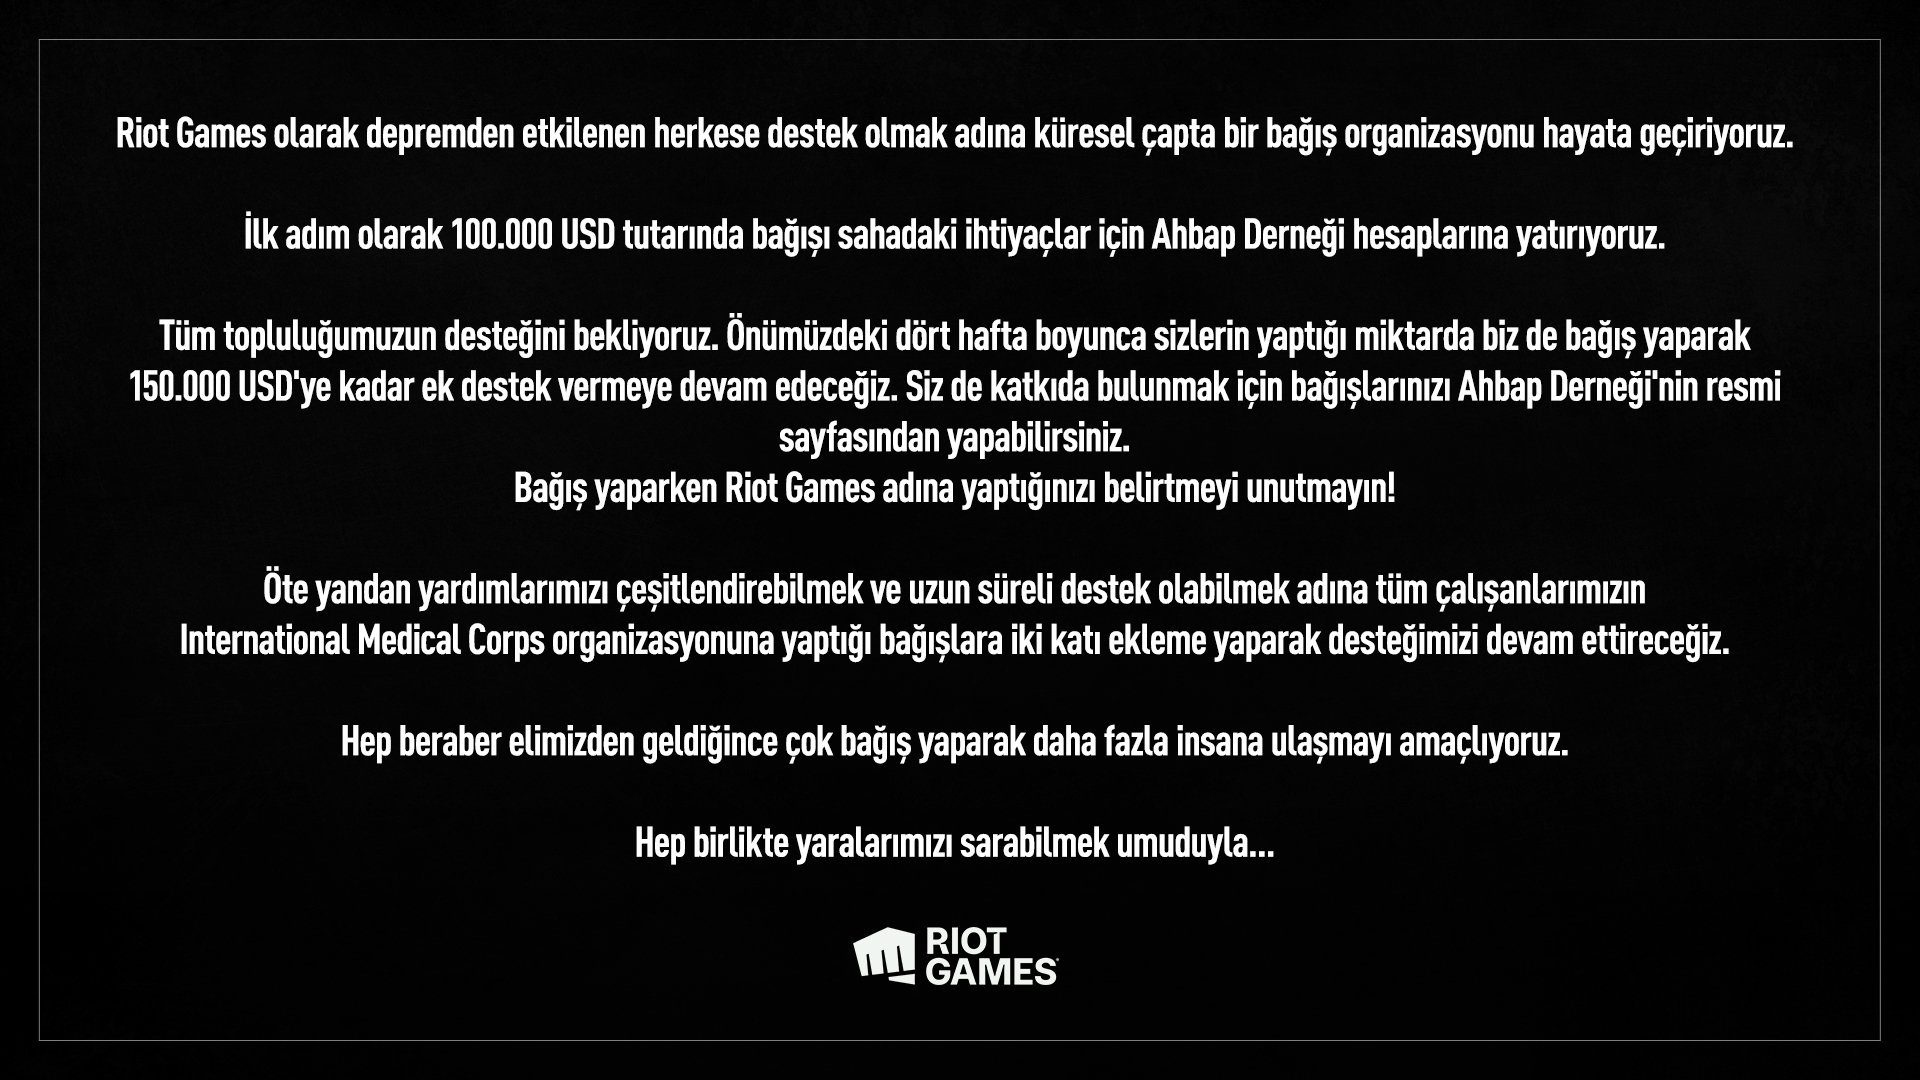 Riot Games’ten Türkiye’ye destek